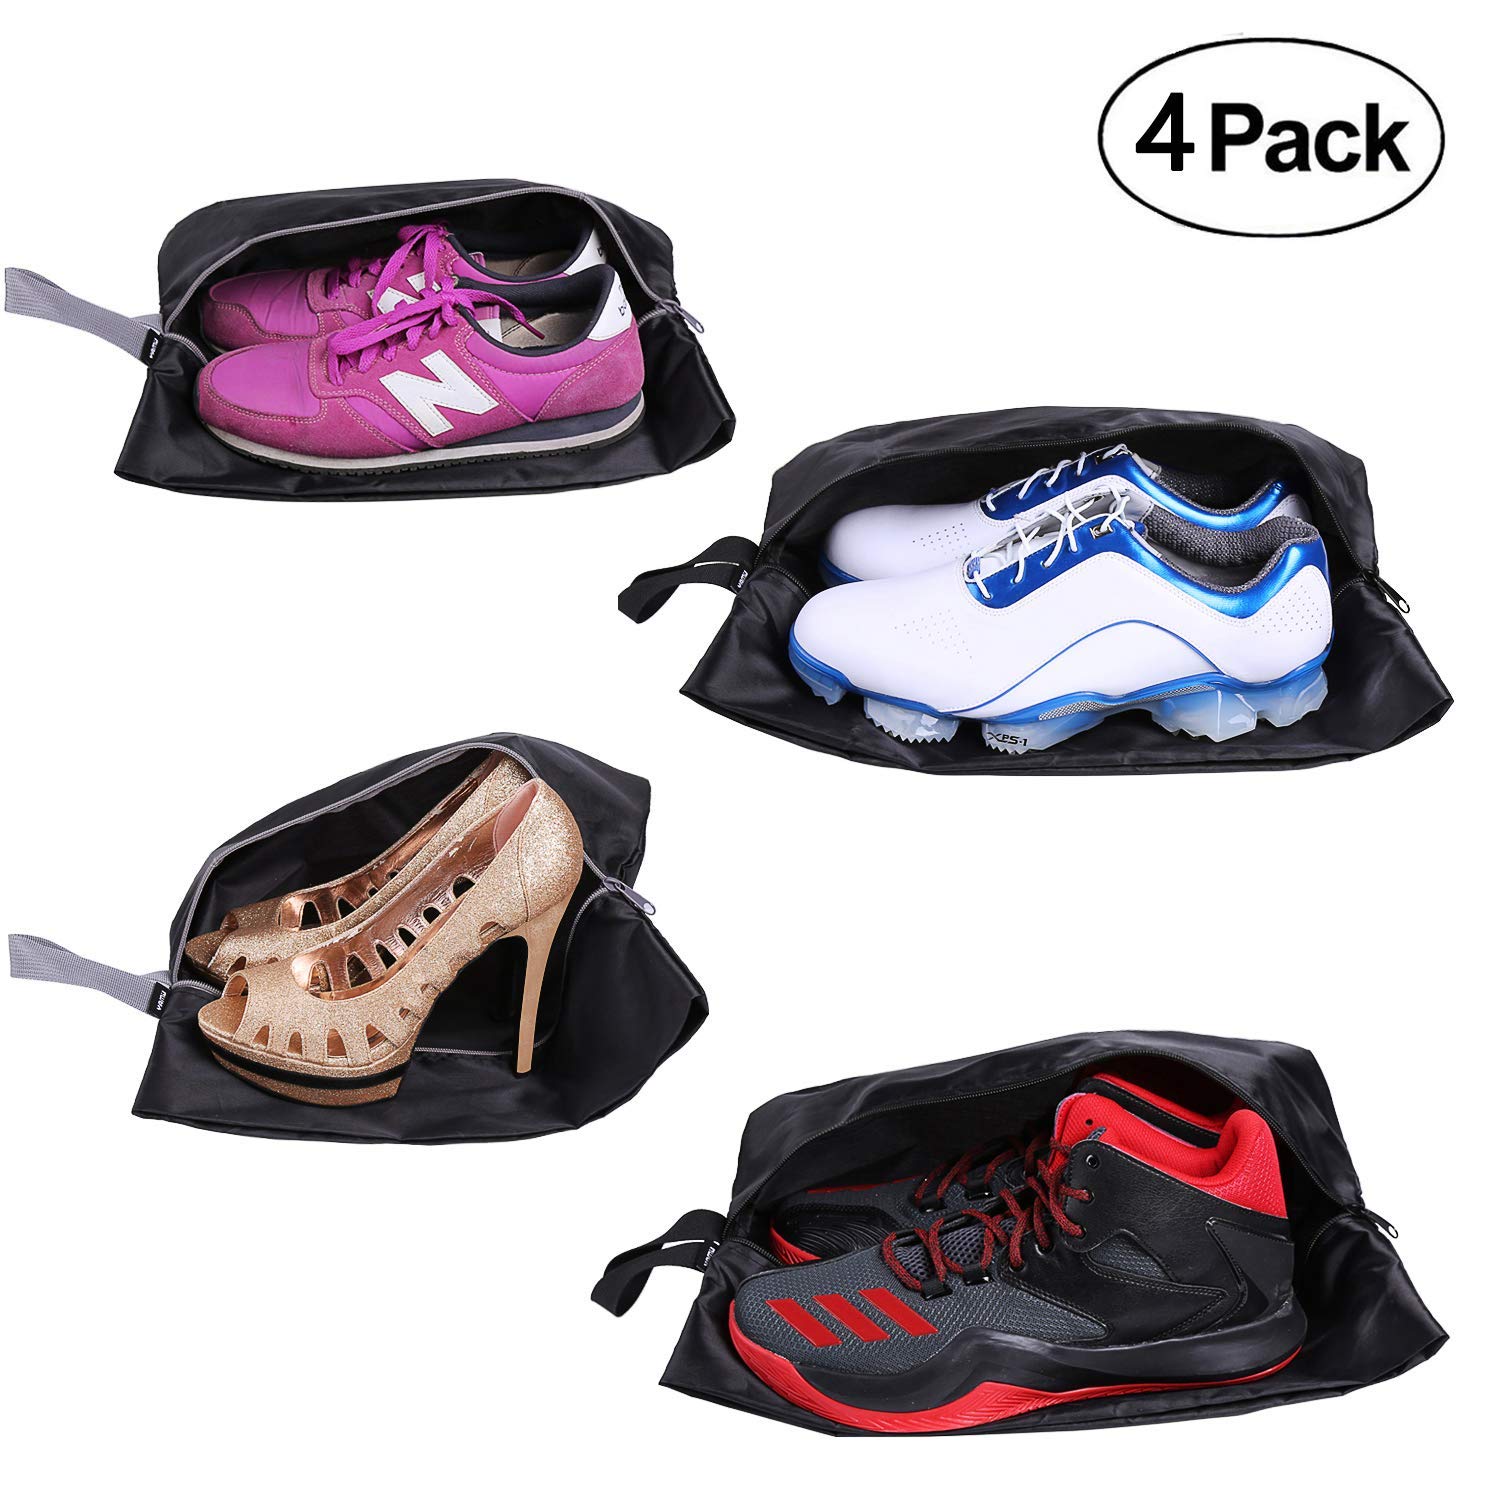 AIOIAI Travel Shoe Bags Set of 4 Waterproof Nylon with Zipper for Men & Women